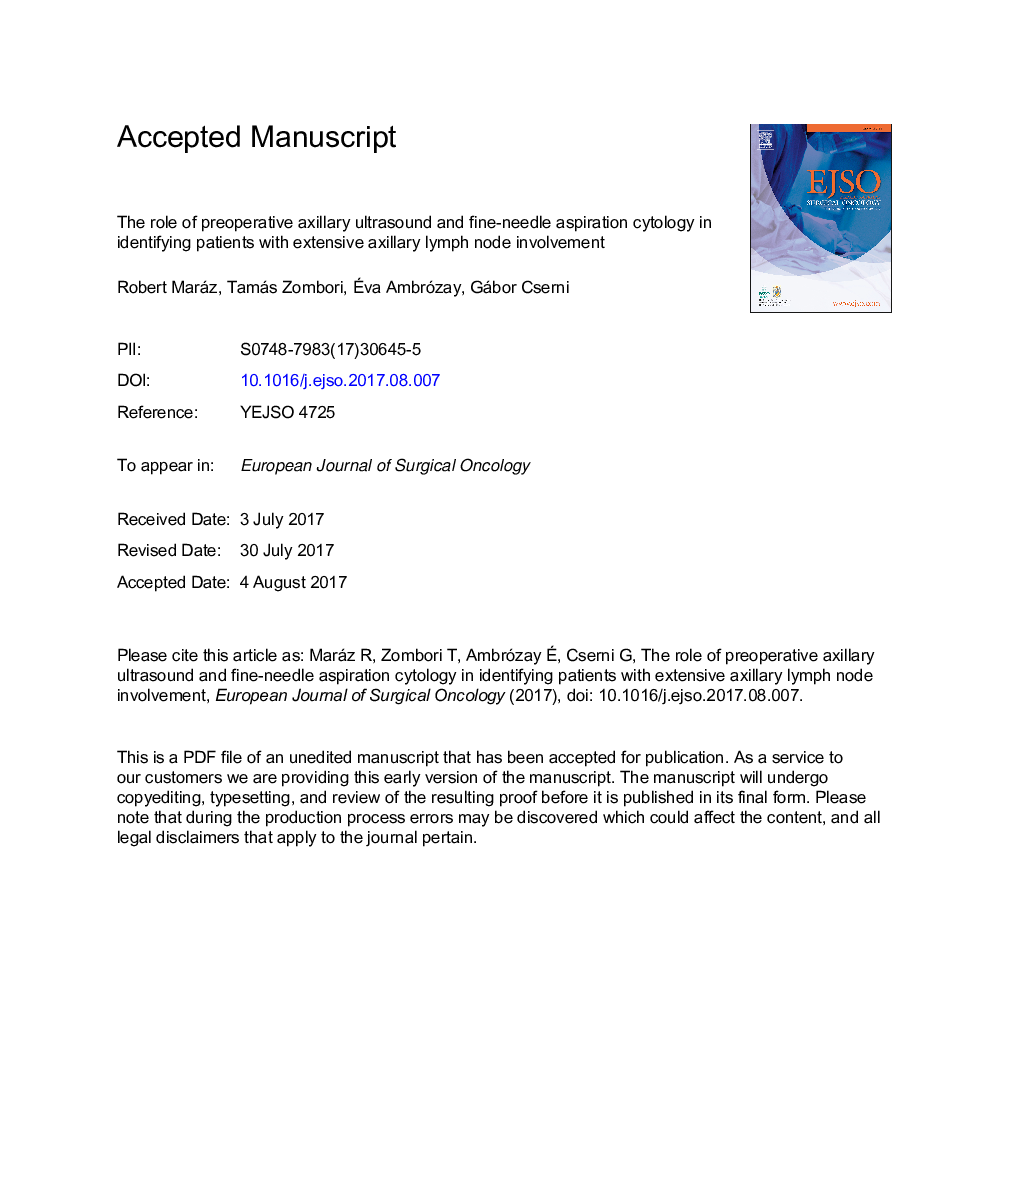 نقش سیتولوژی آسپیراسیون سونوگرافی زیر سینوسی قبل از عمل جراحی در شناسایی بیماران مبتلا به گره لنفاوی زیر بغل گسترده 